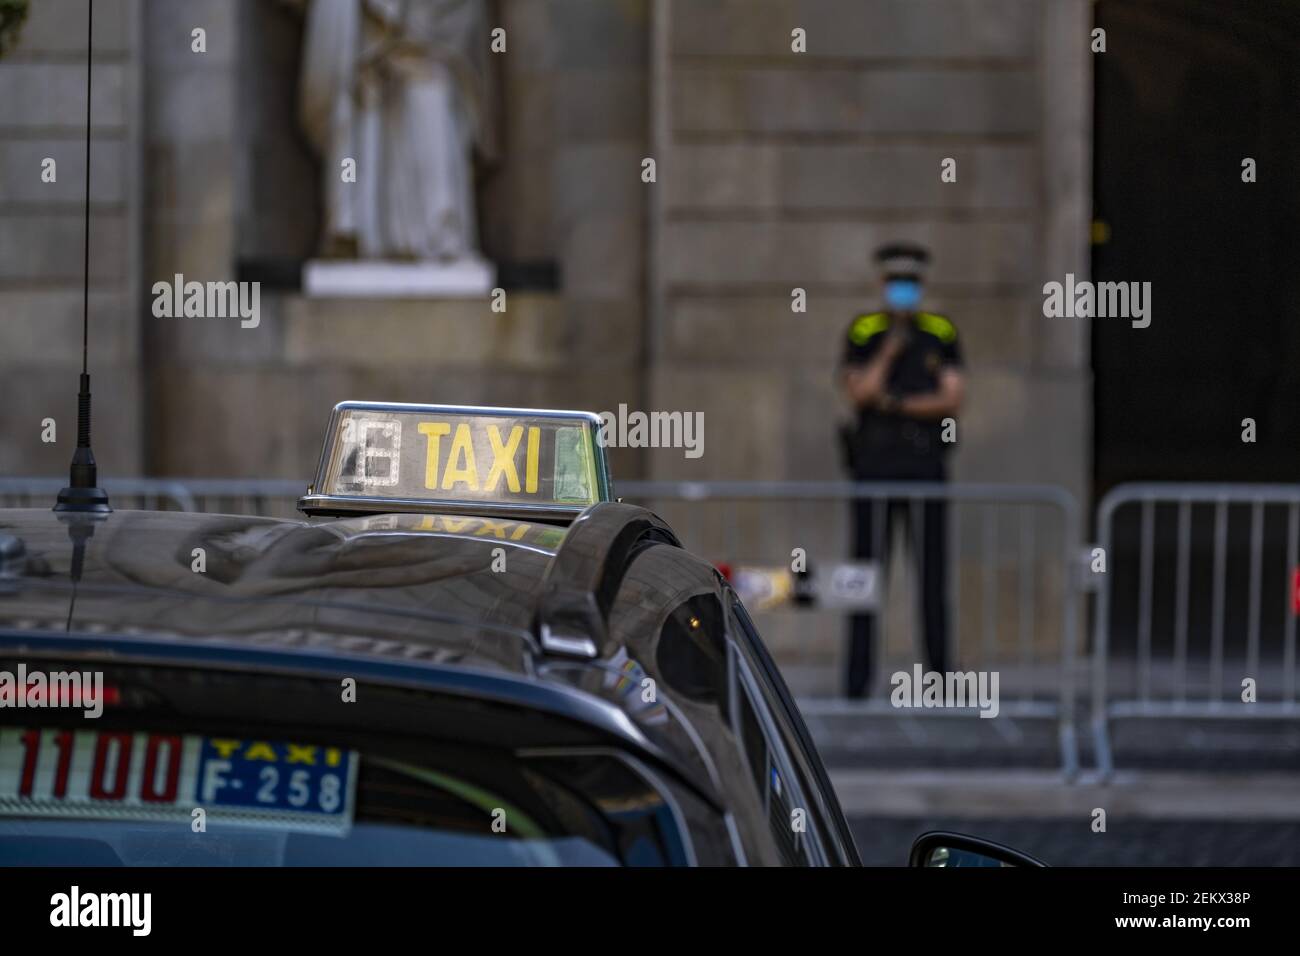 El indicador de LUZ DE TAXI en el techo de un vehículo se ve frente a la  entrada del Ayuntamiento de Barcelona, custodiado por un agente de la  Guardia Urbana de Barcelona.